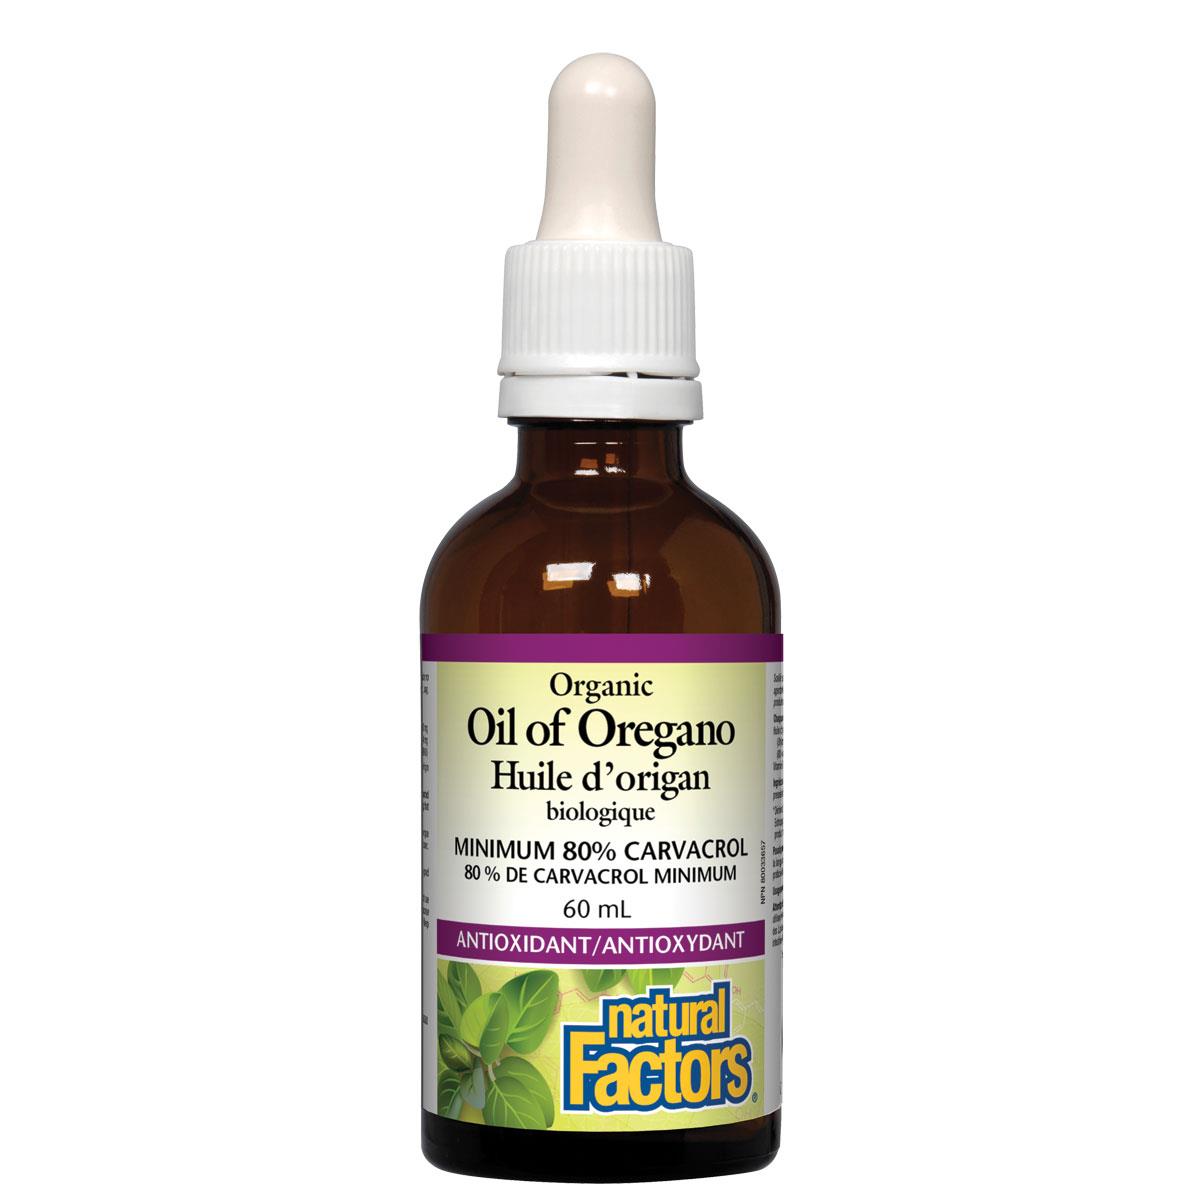 Natural Factors Organic Oil of Oregano, 60ml